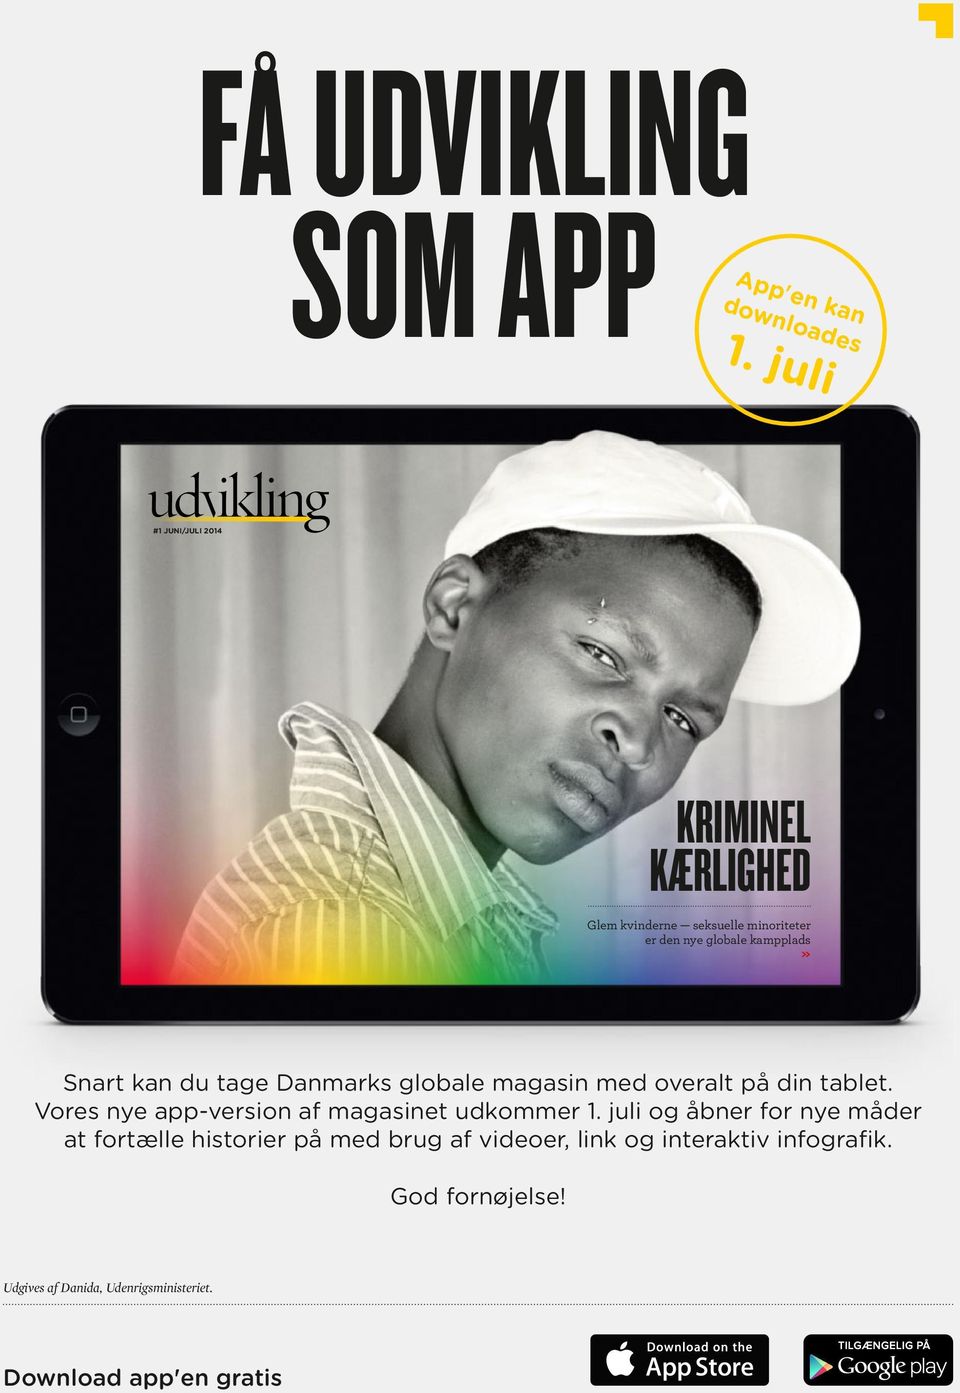 Snart kan du tage Danmarks globale magasin med overalt på din tablet.